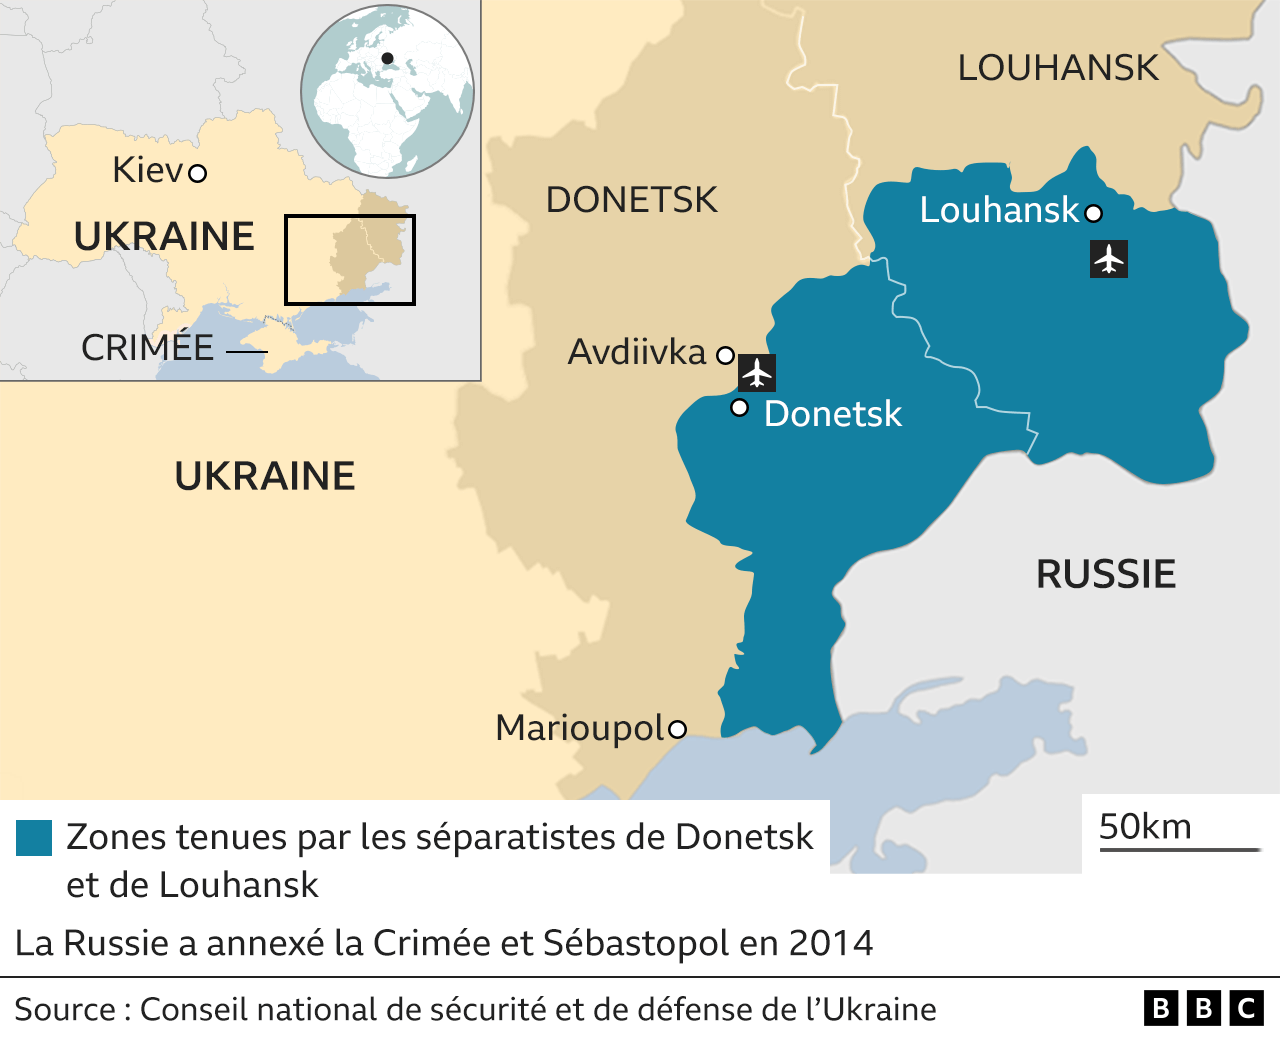 Carte montrant les régions de Donetsk et de Luhansk dans l'est de l'Ukraine et les zones tenues par les séparatistes soutenus par la Russie au sein de ces régions.